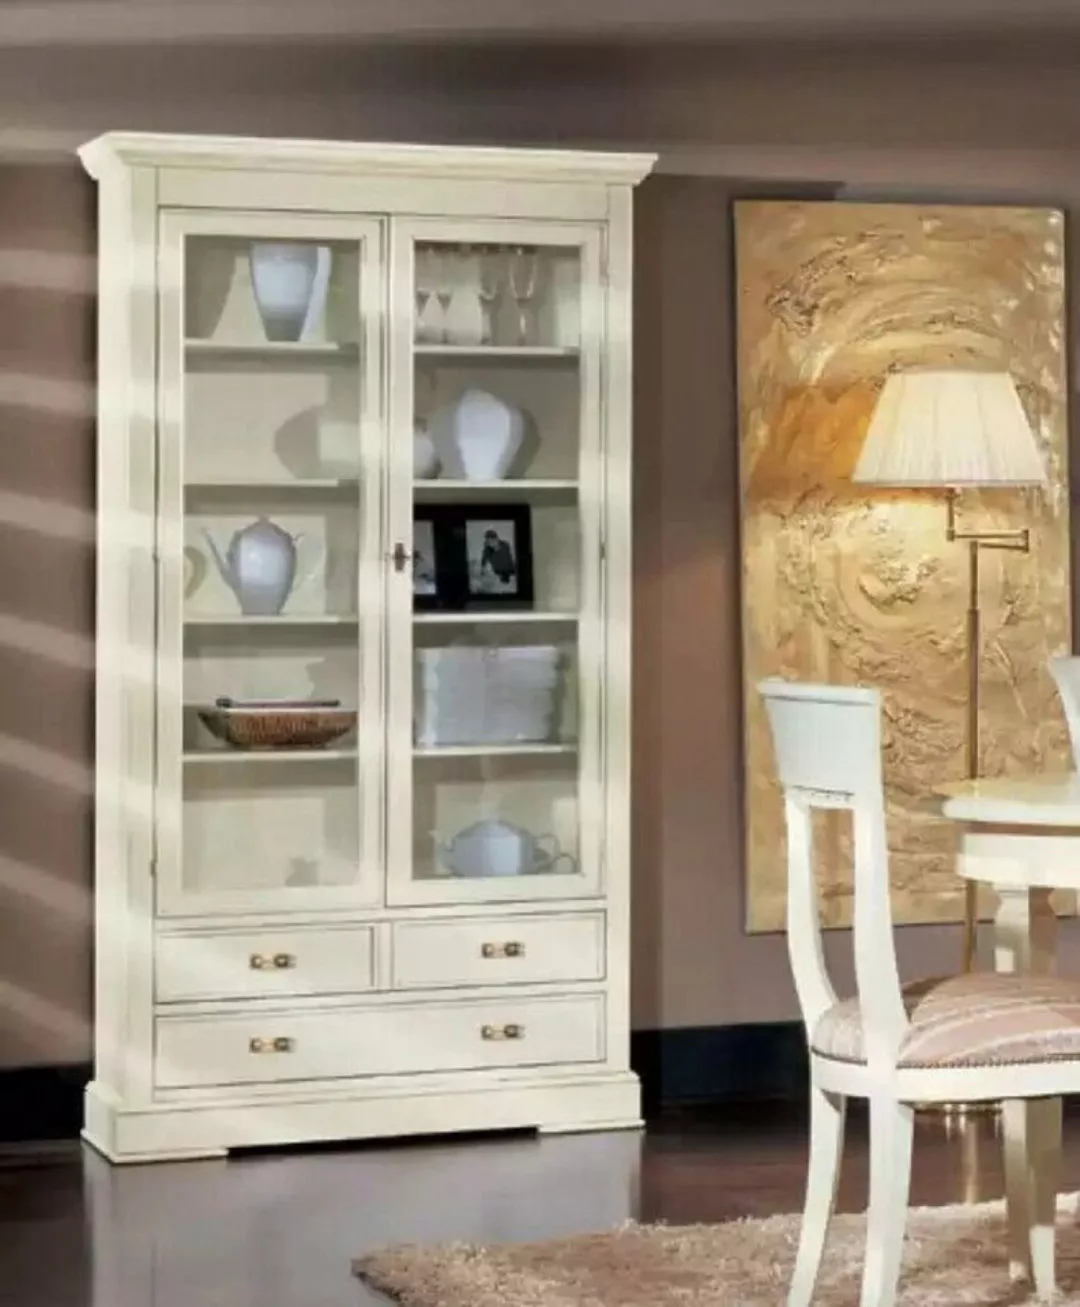 JVmoebel Vitrine Wohnzimmer Glas Vitrine Anrichte Holz Luxus Schrank Möbel günstig online kaufen